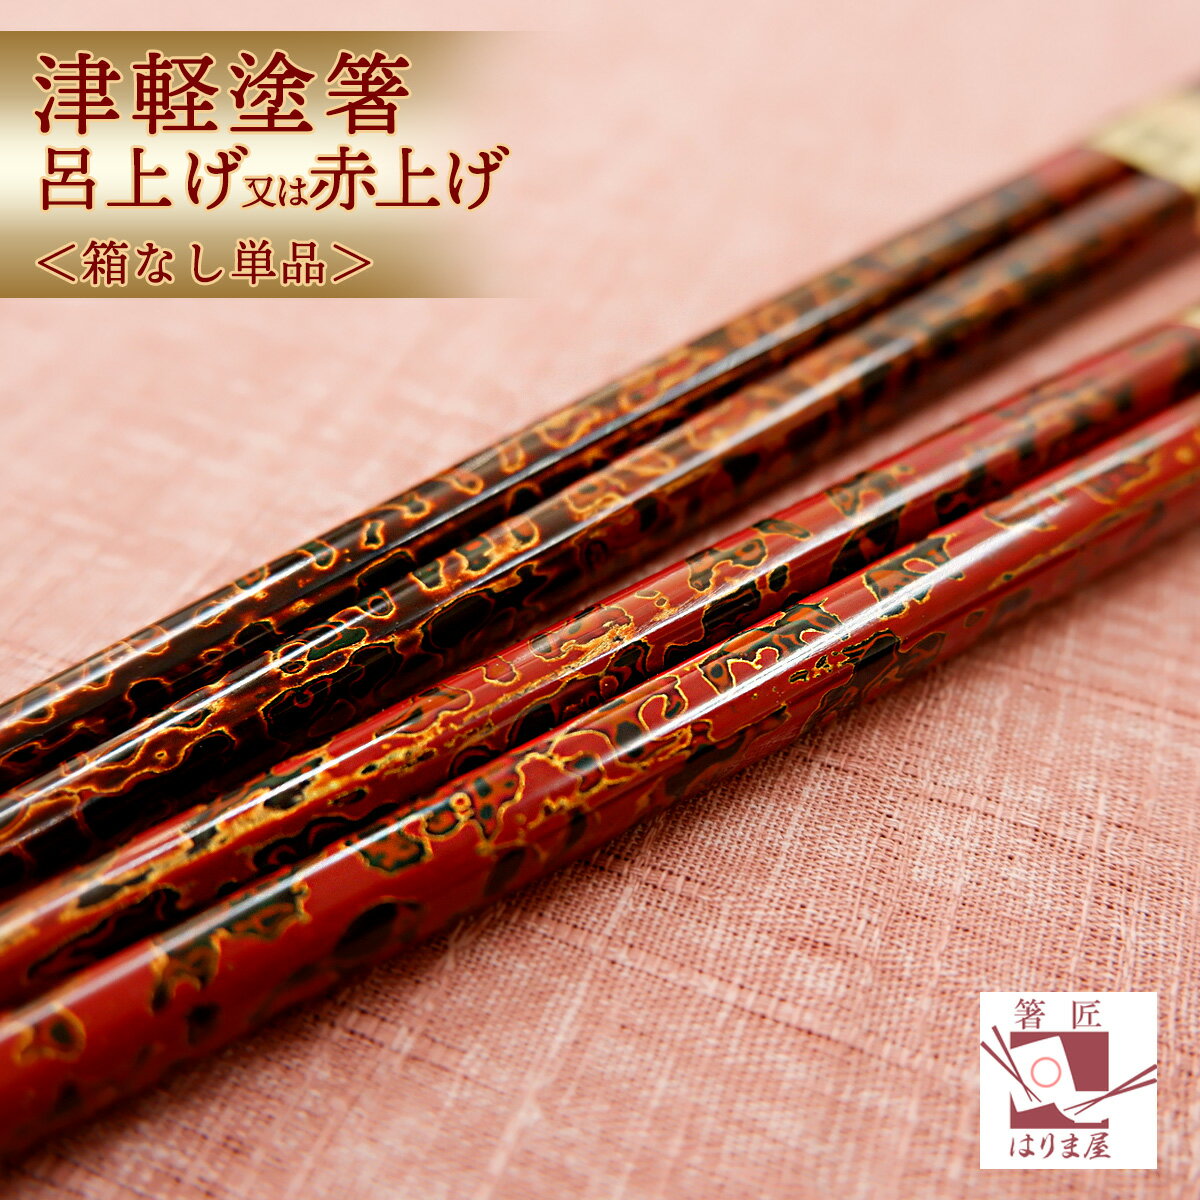 日本製の伝統的なデザインのお箸で食す贅沢なひと時をご家庭に箸 お箸...